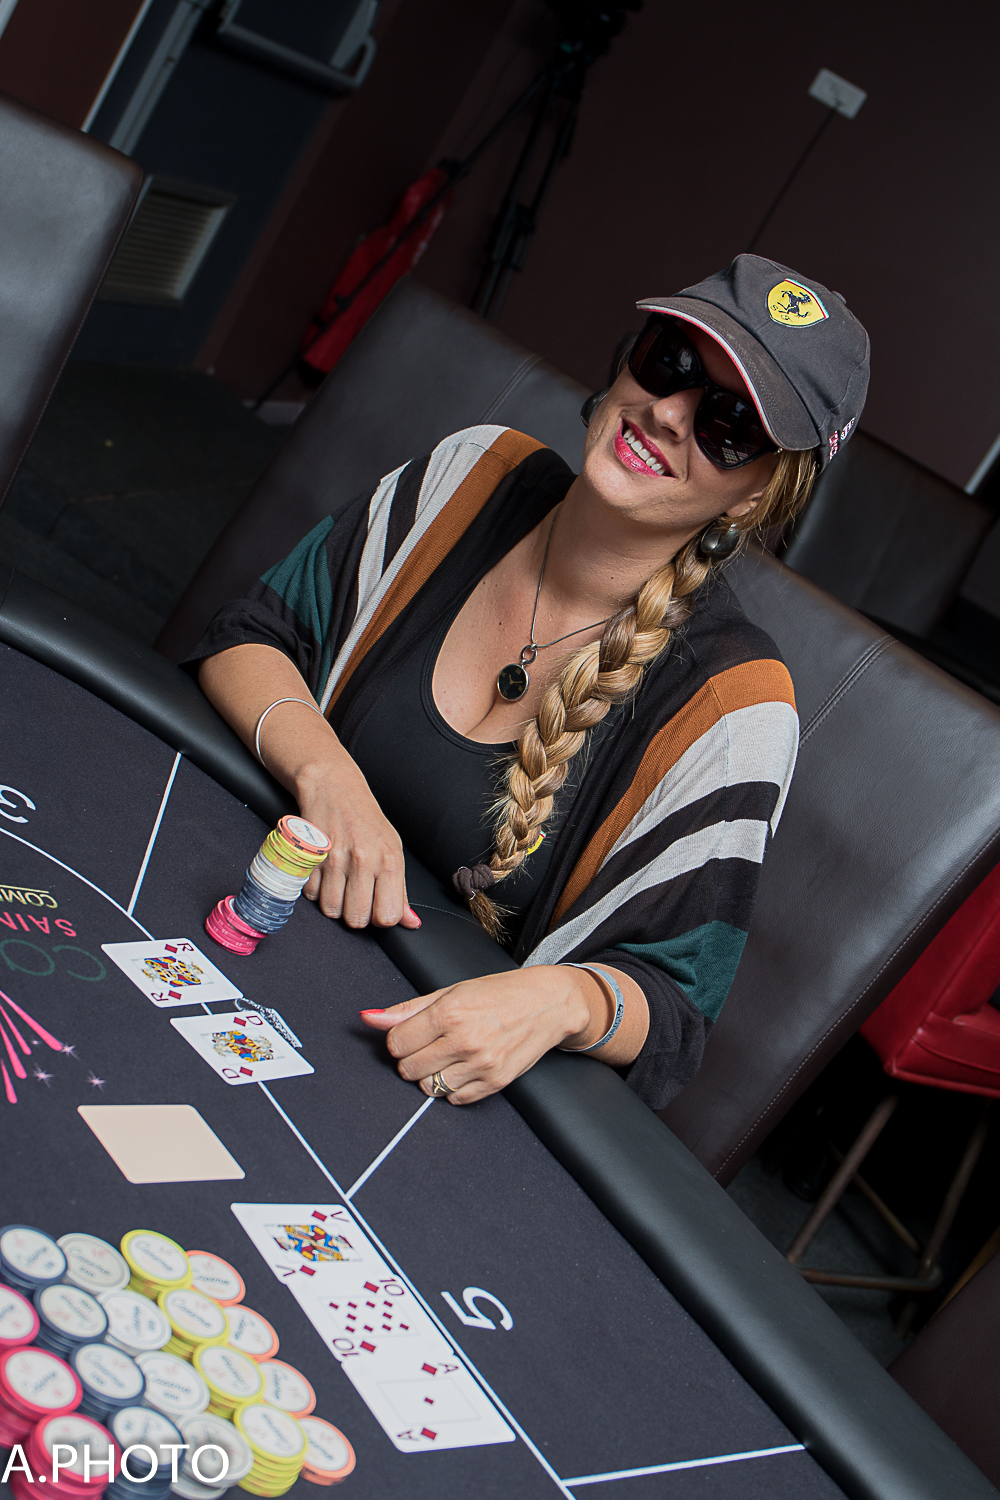 Lunettes noires et casquette: la panoplie de la joueuse de poker